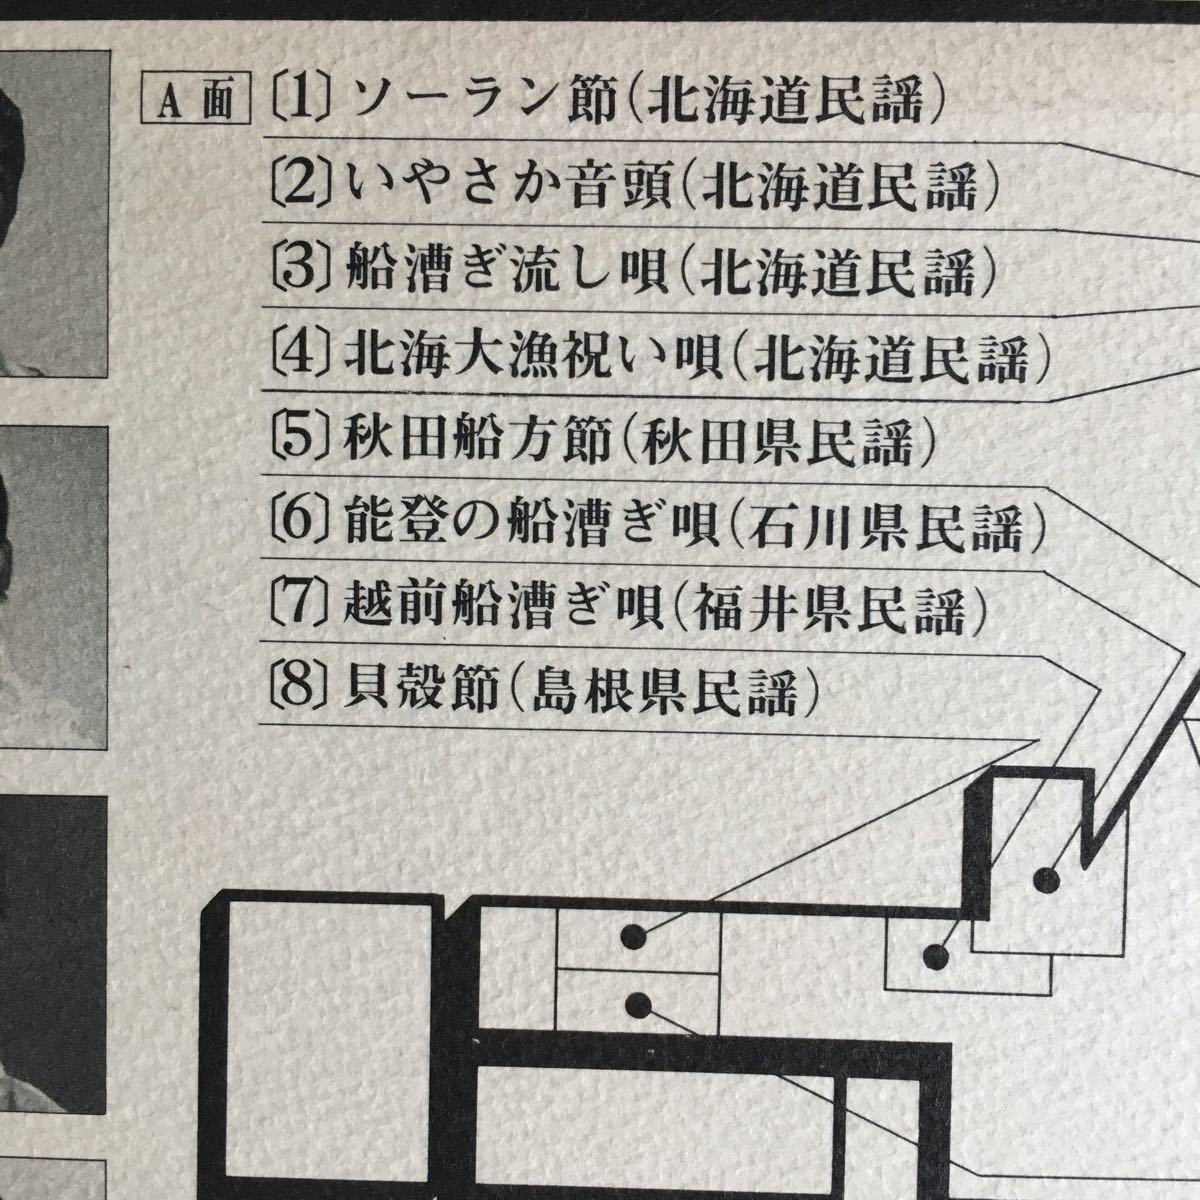 【LPレコード】 ふるさとシリーズ 日本民謡集 荒波の唄_画像3